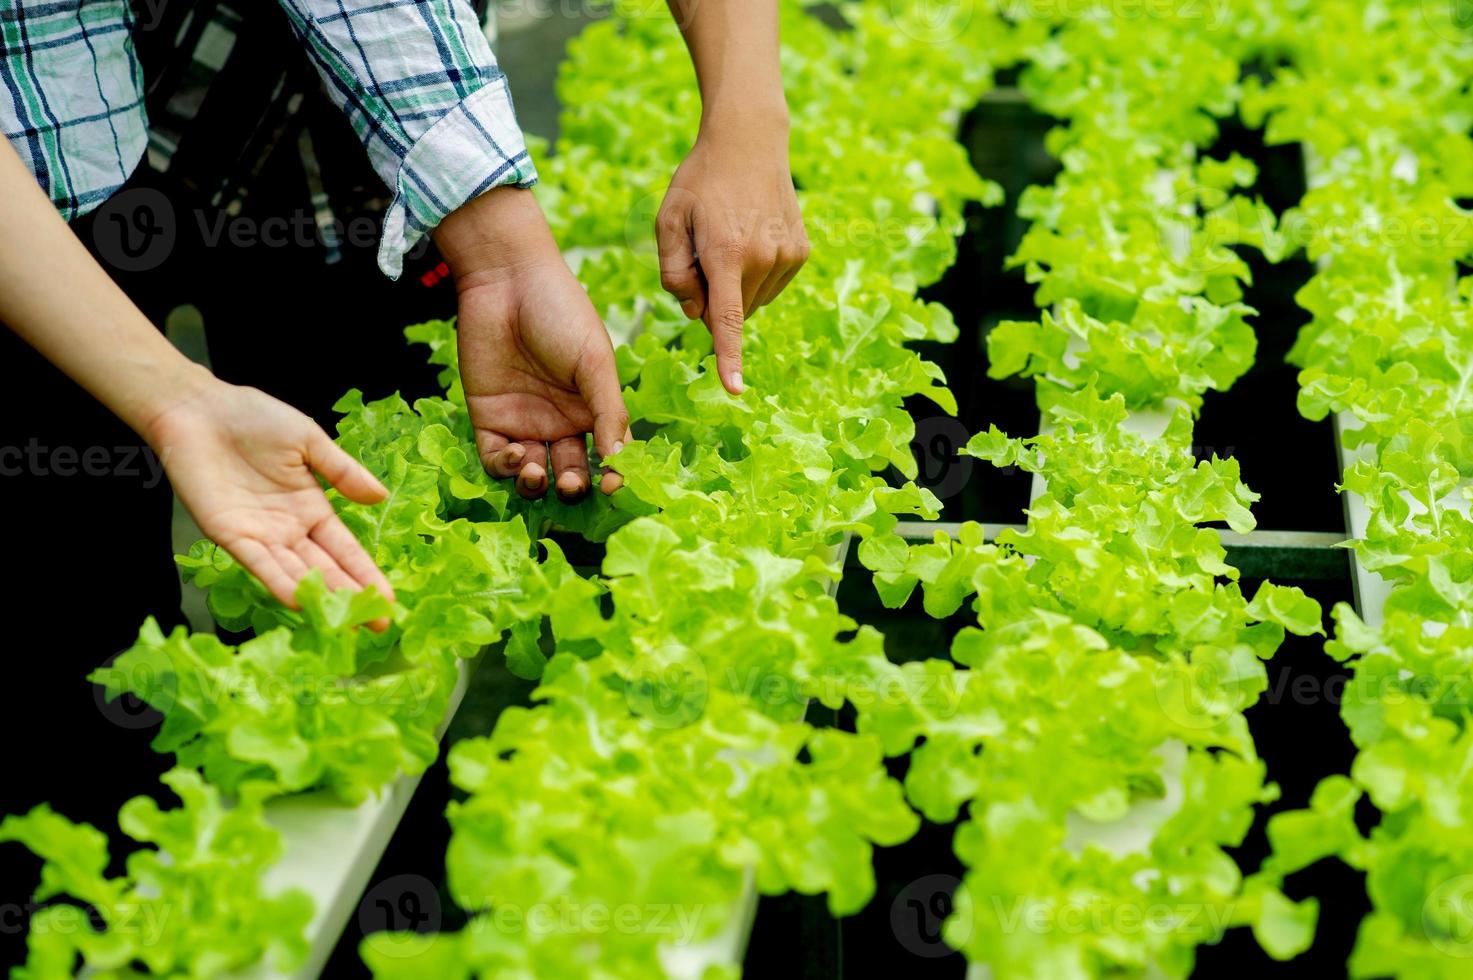 jardiniers et laitue biologique dans le concept d'alimentation saine de l'intrigue photo